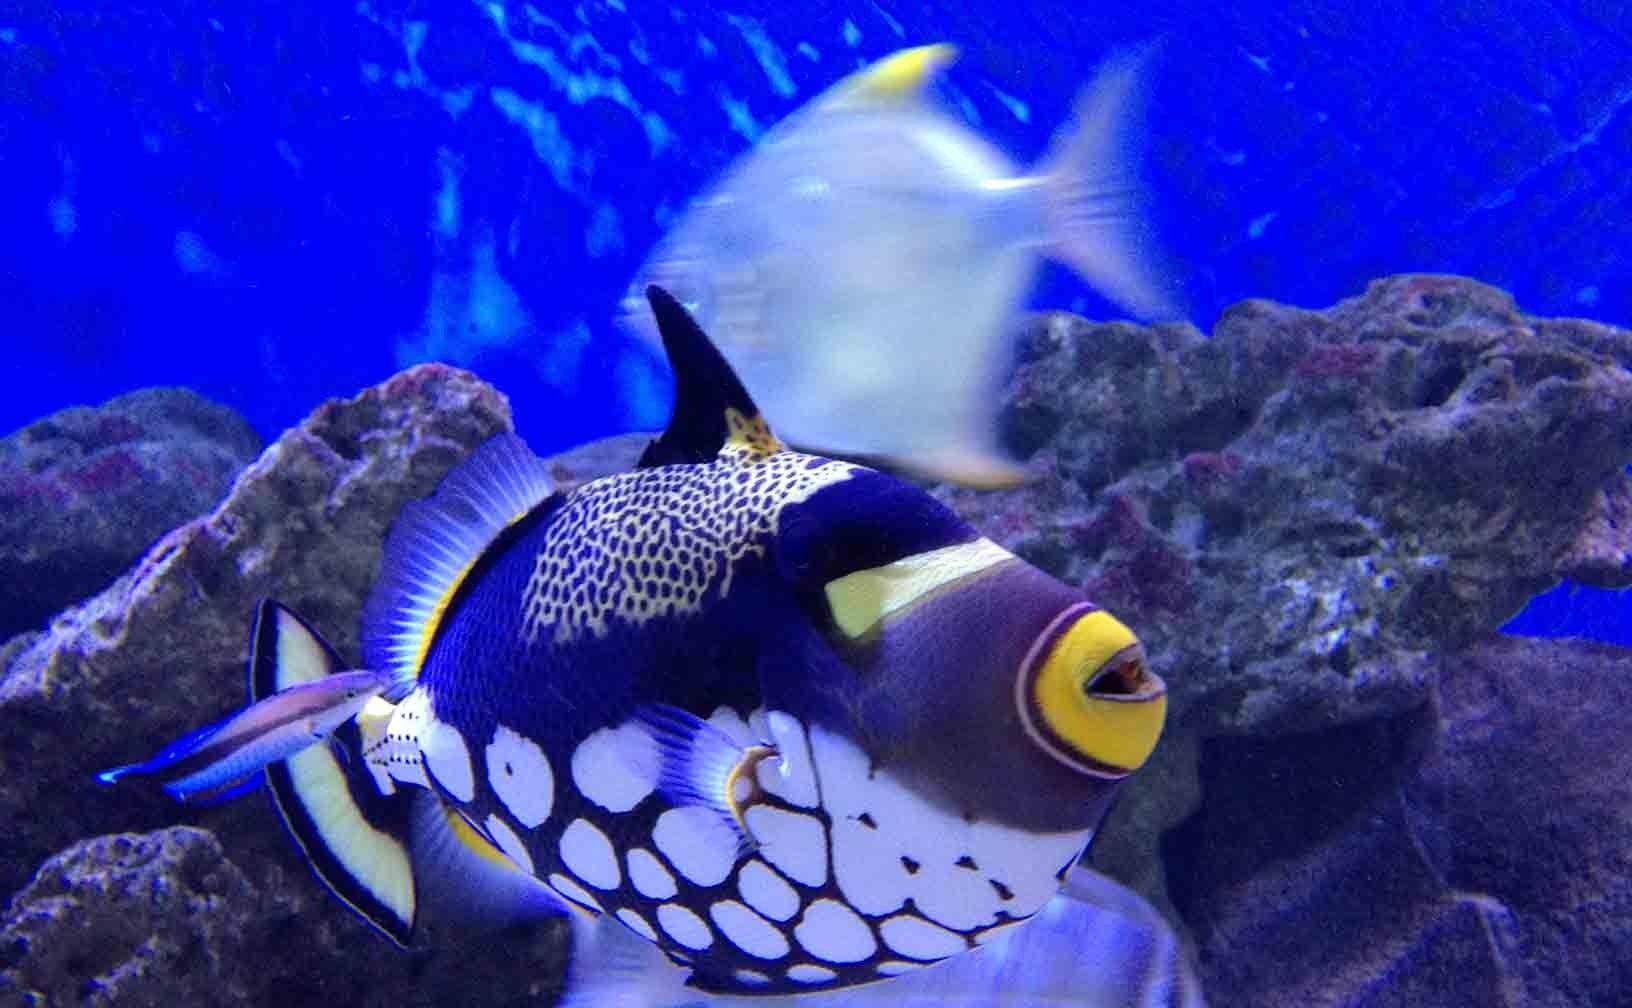 The Mauritius Aquarium